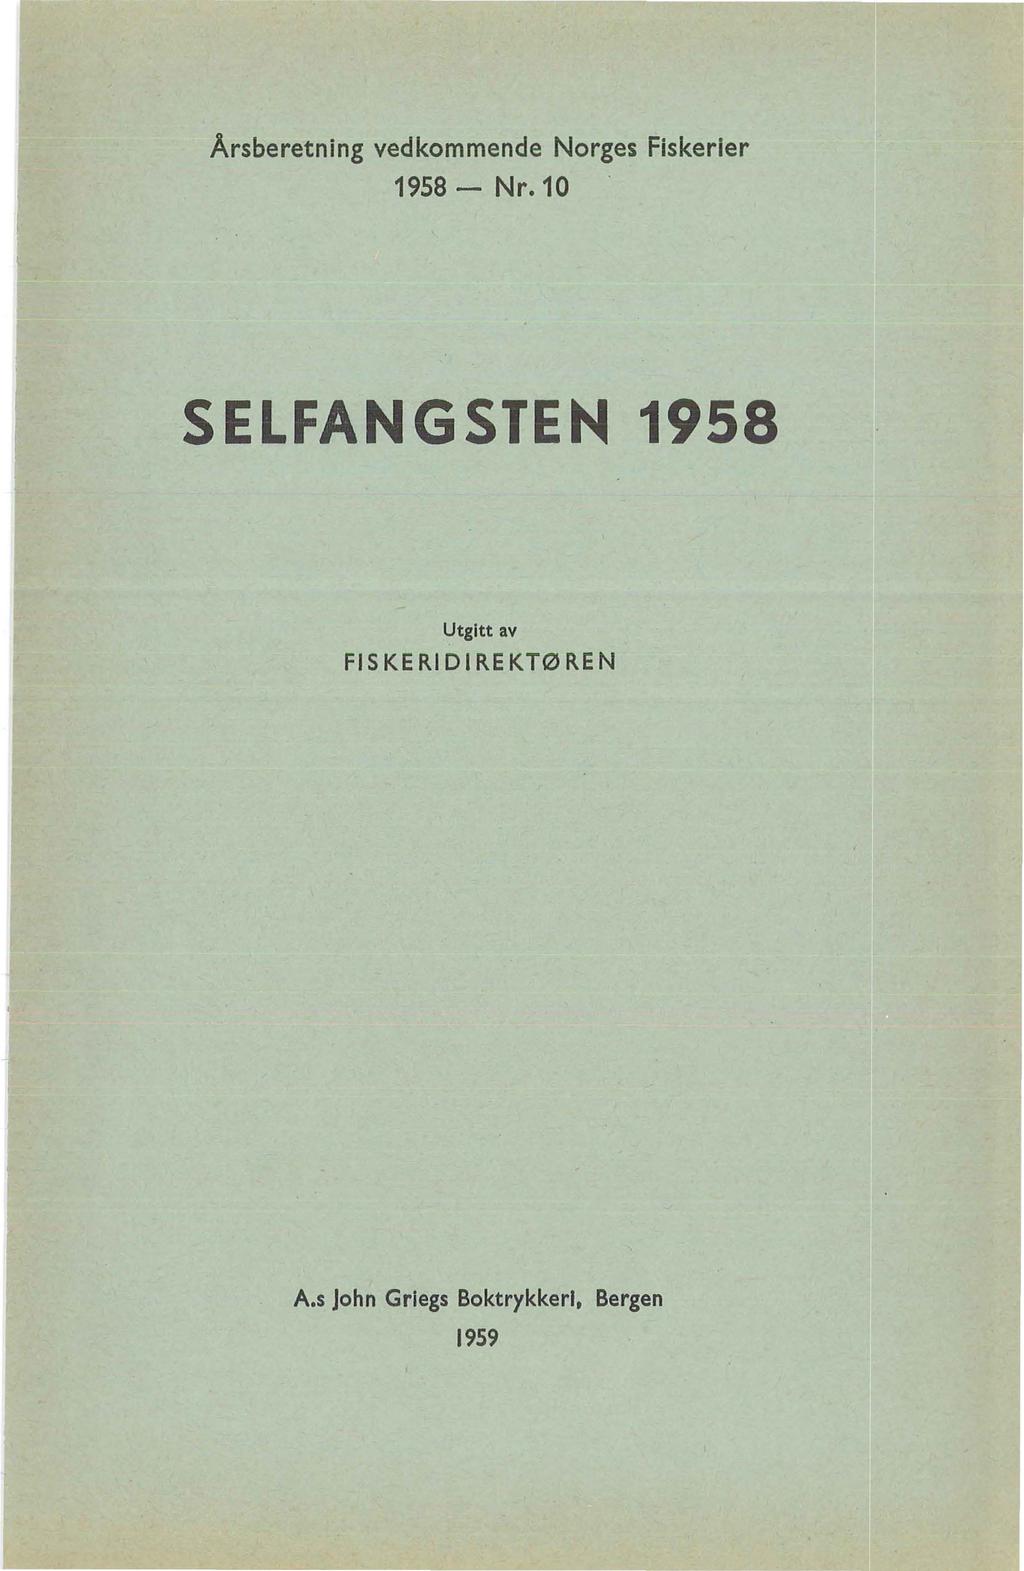 Årsberetning vedkommende Norges Fiskerier 1958- Nr.